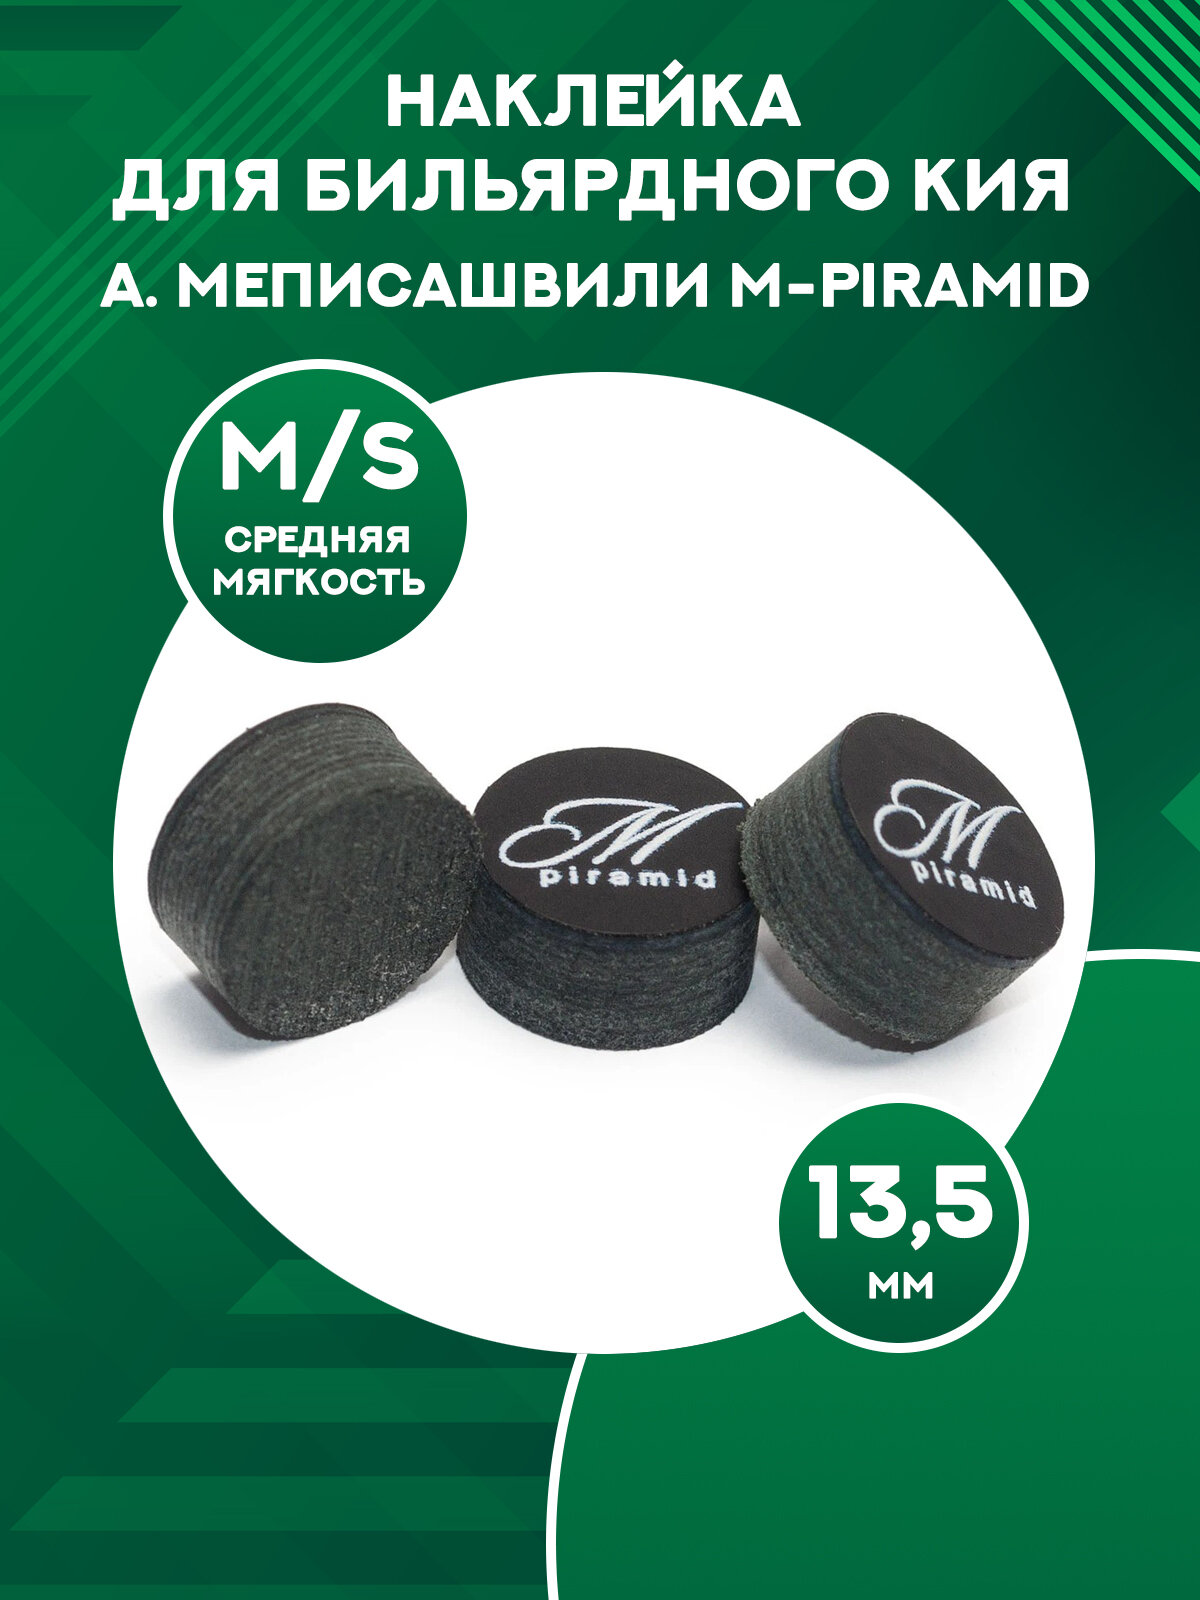 Наклейка для бильярдного кия А. Меписашвили M-Piramid (medium/soft, 13,5 мм)